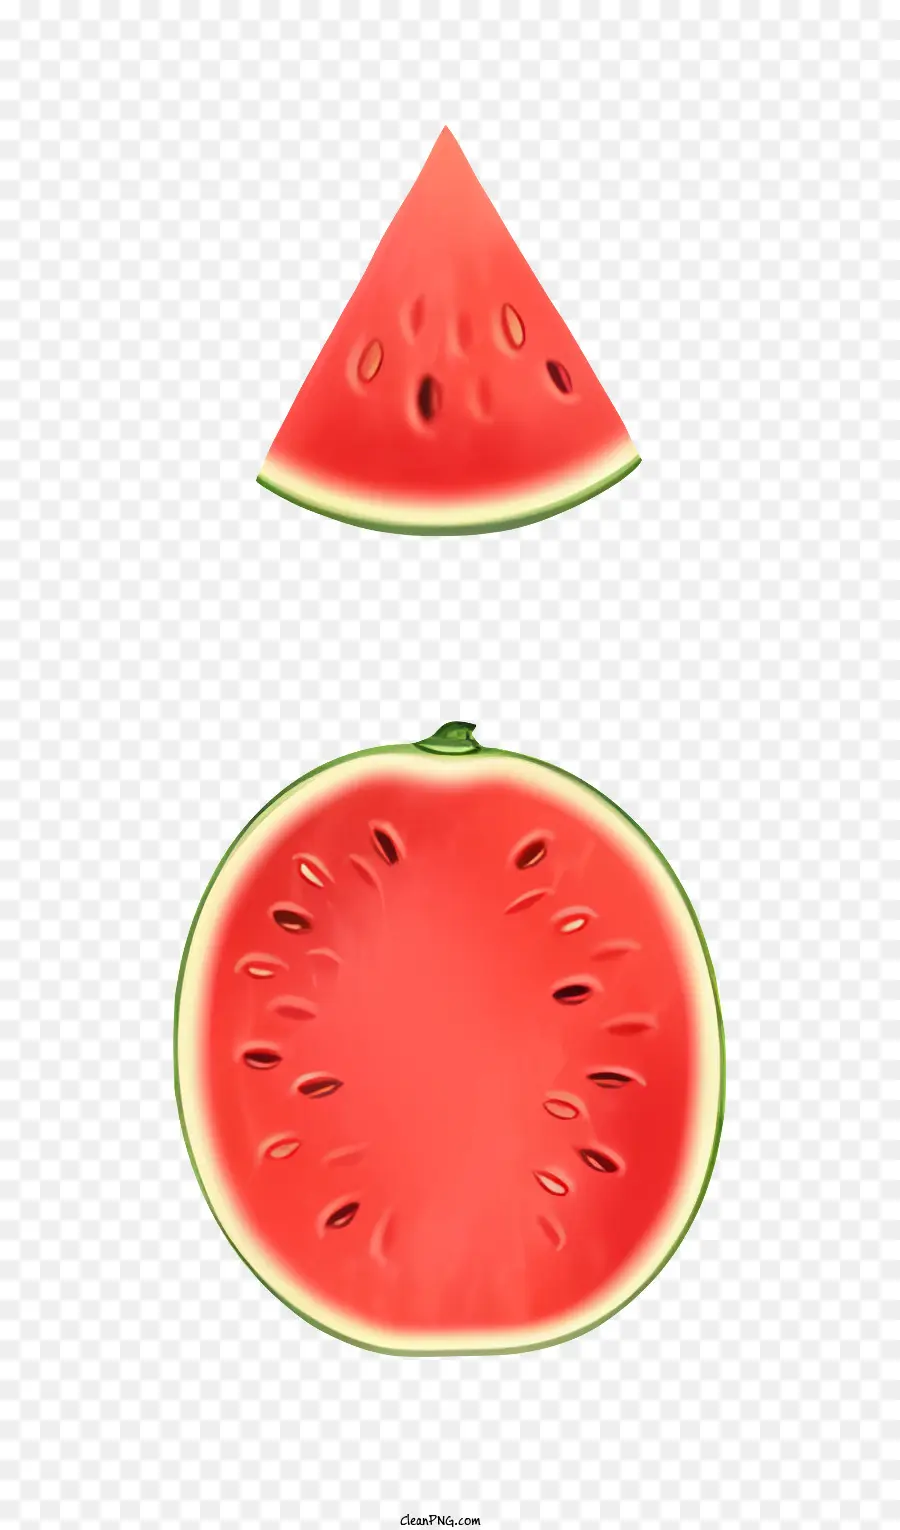 weißen hintergrund - Scheibe Wassermelone mit rotem Fleisch sichtbar